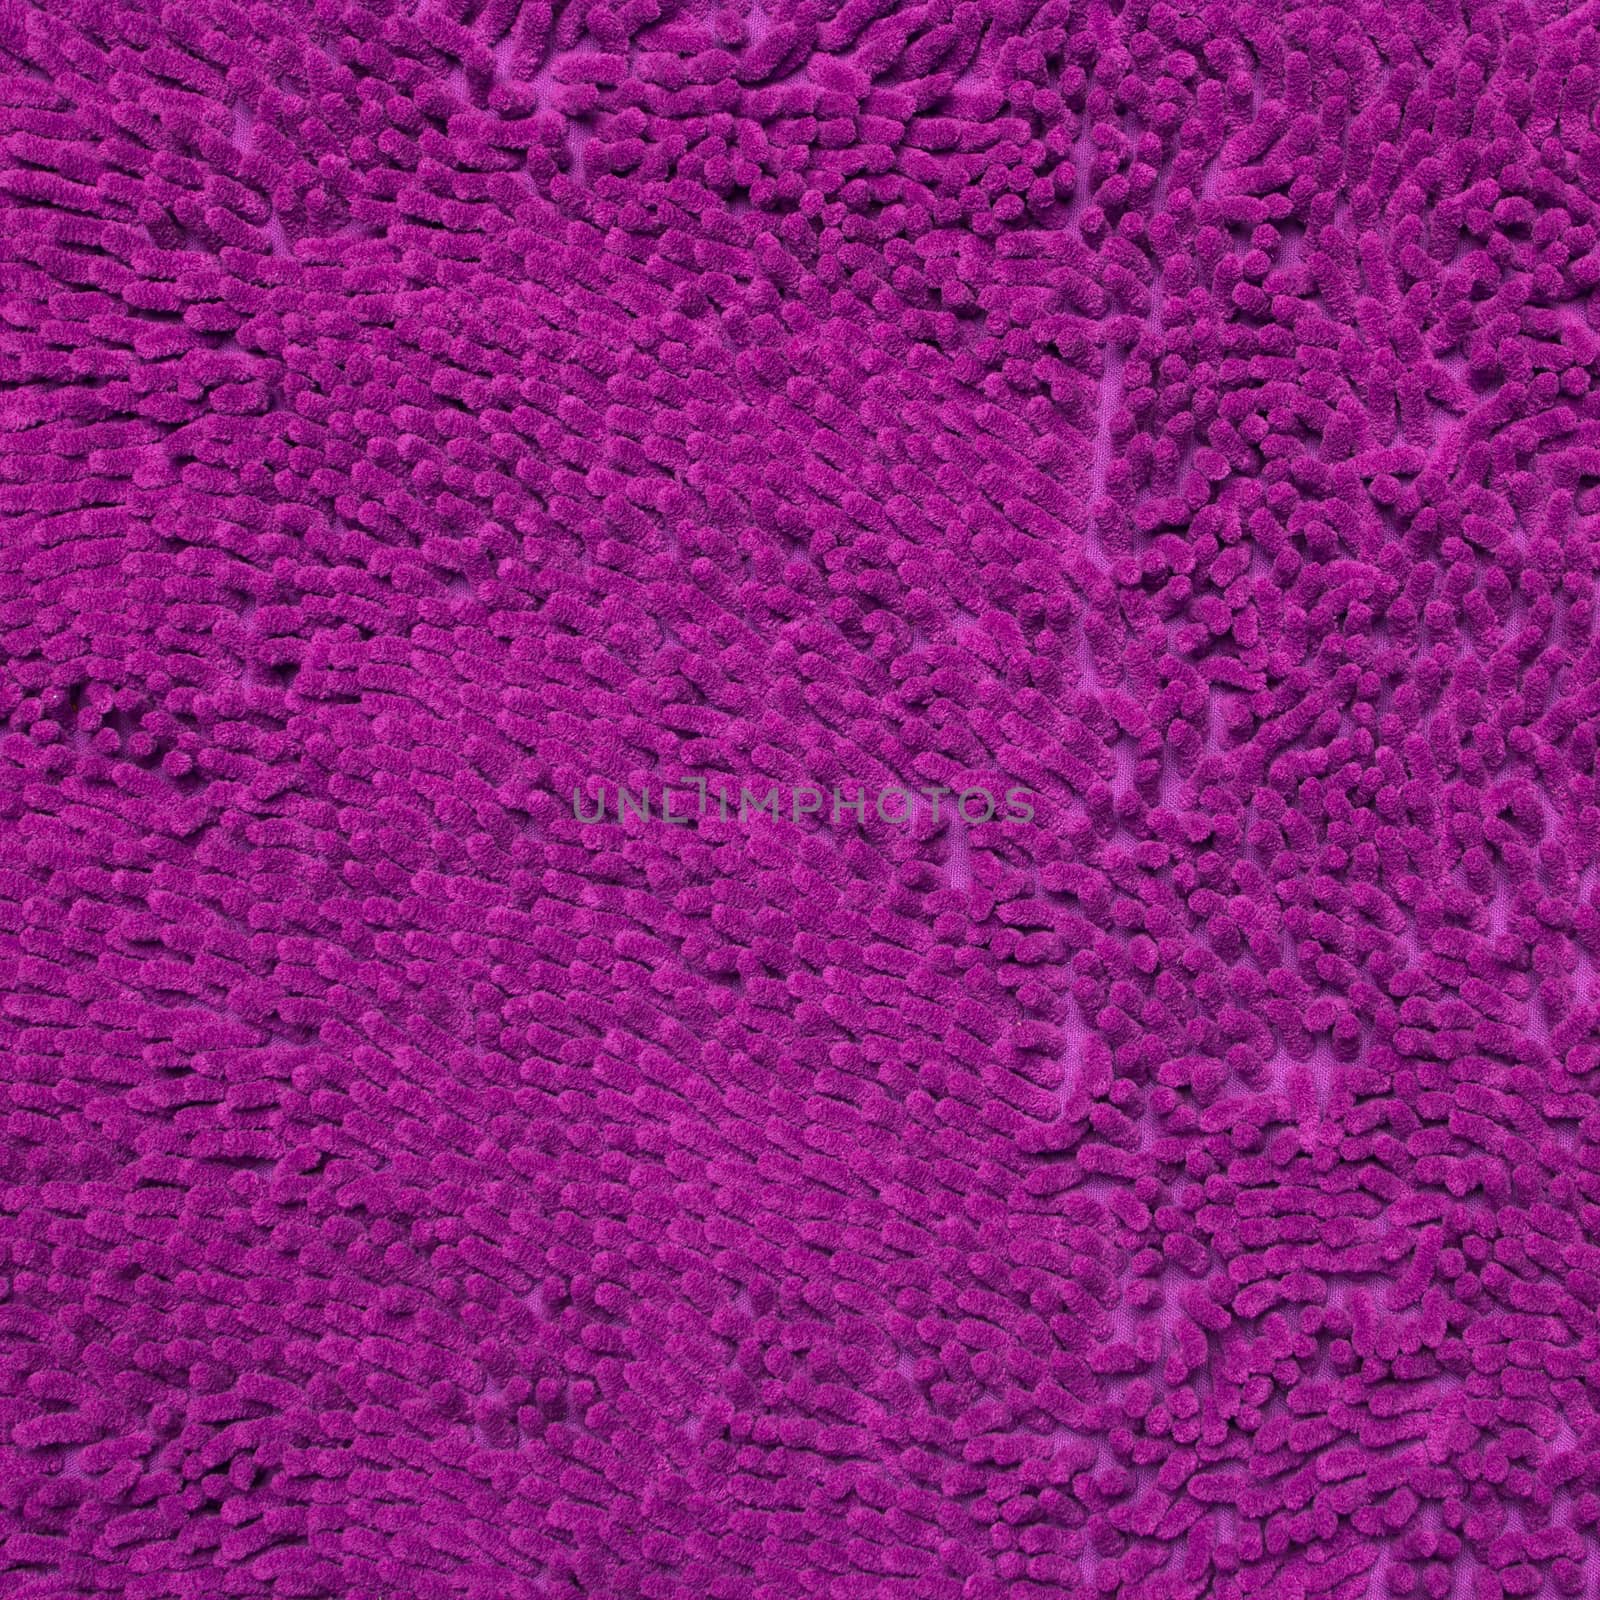 Doormat texture by wyoosumran